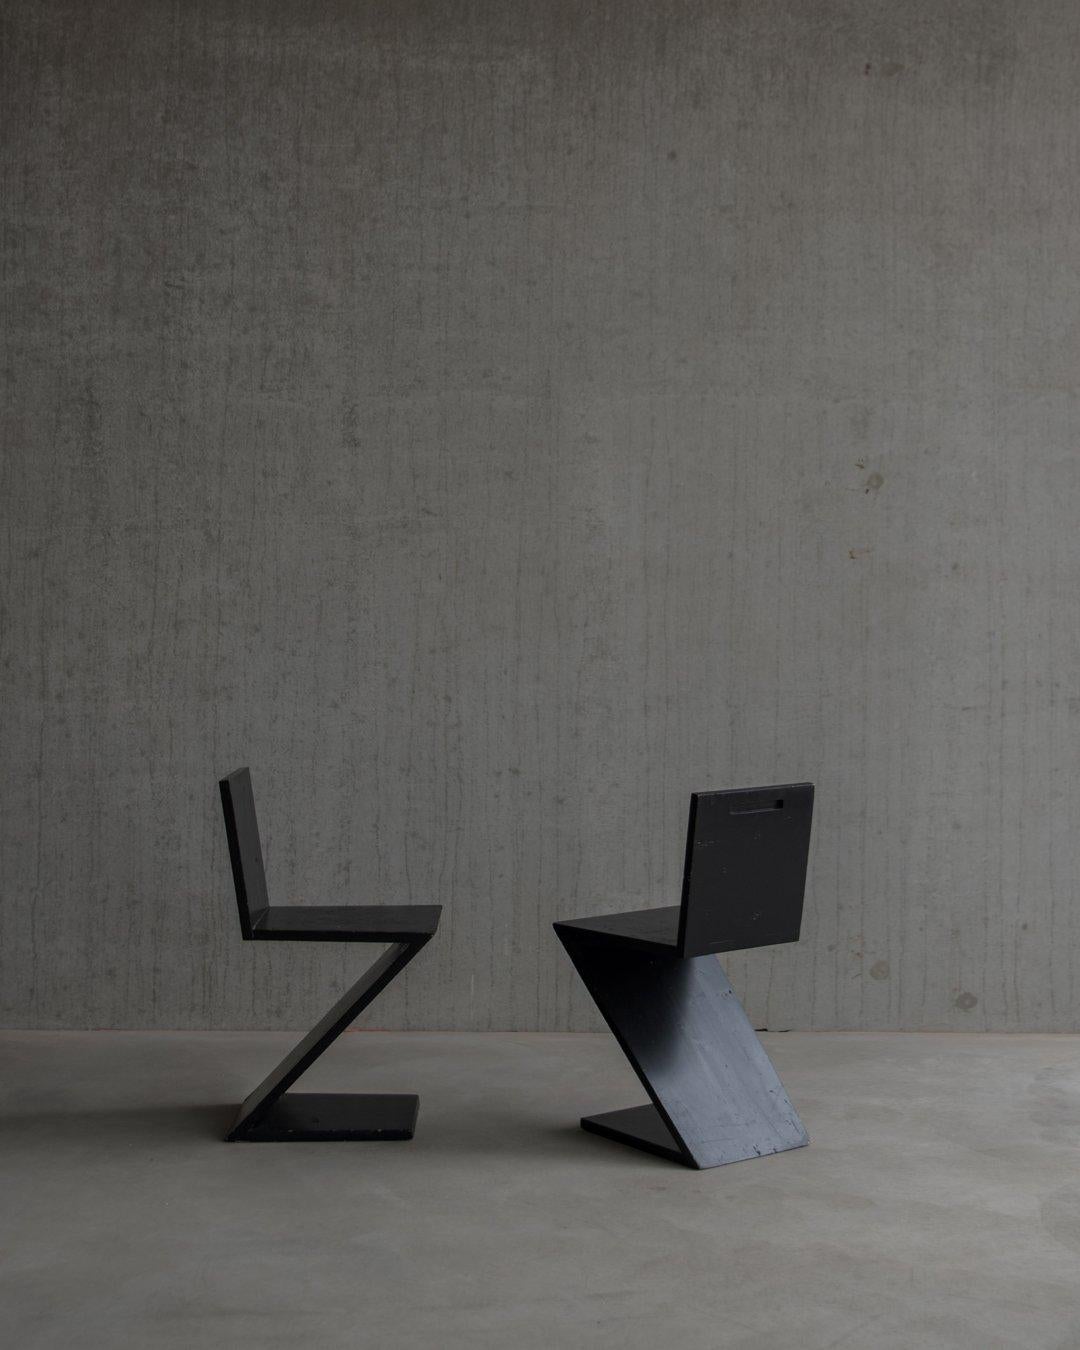 ZigZag-Stühle aus Kiefernholz, entworfen von Gerrit Rietveld. Sie stammen von der Rietveld-Akademie in den Niederlanden. Dieser Satz von zwei Stücken wurde wahrscheinlich von Studenten der Akademie in den 80er Jahren als Übungs- oder Beispielstuhl